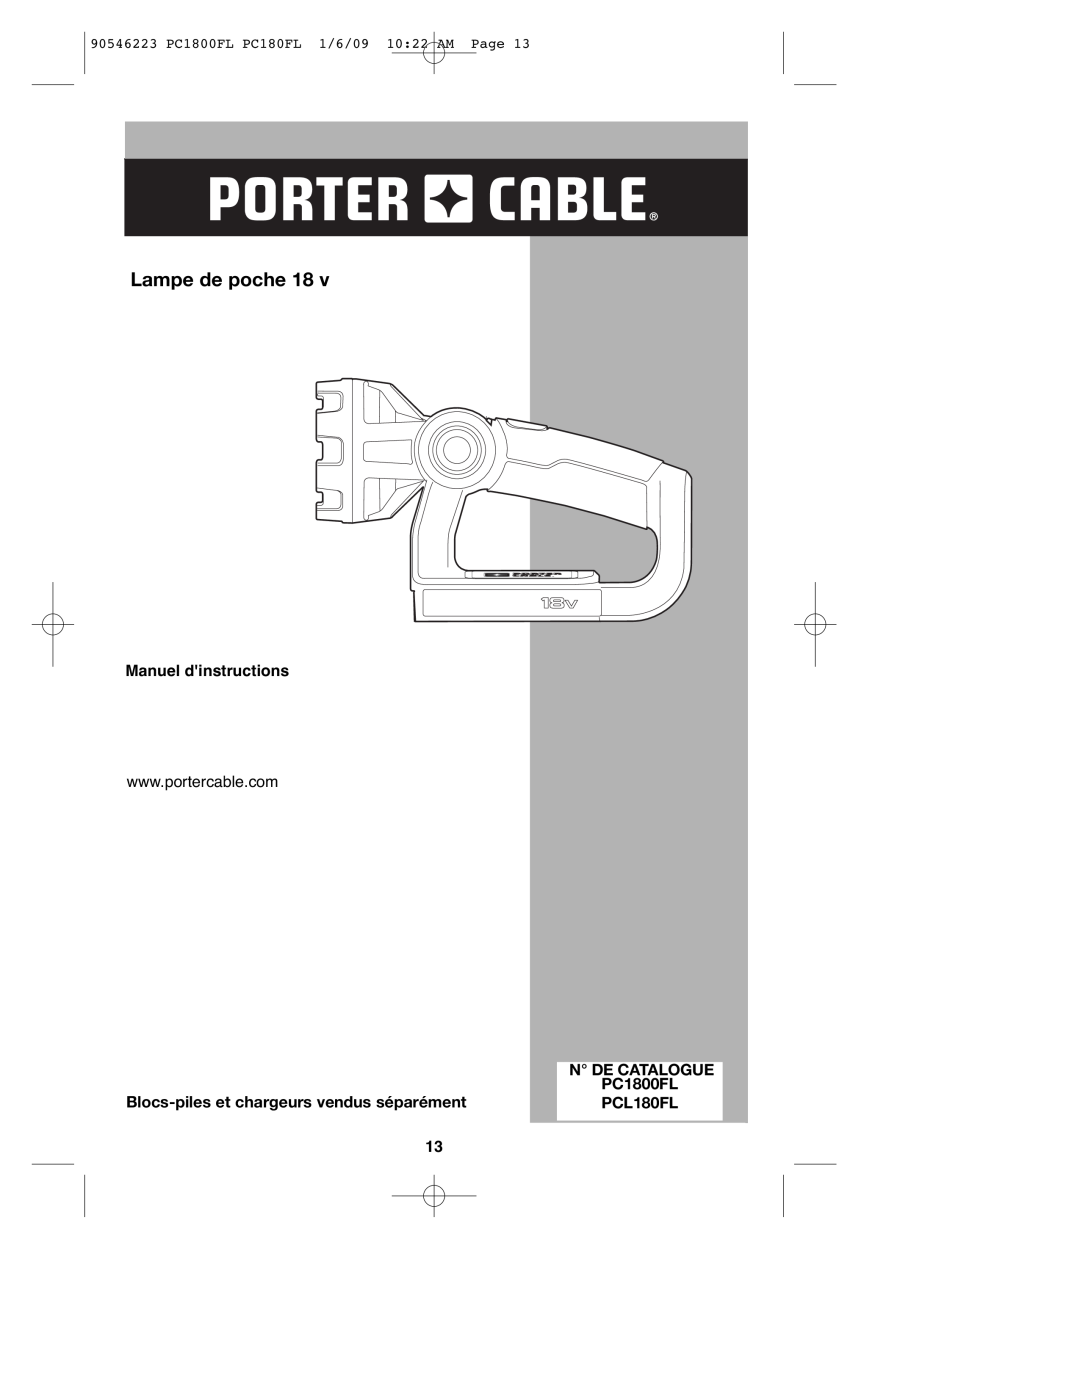 Porter-Cable PCL180FL Lampe de poche, Manuel dinstructions, 90546223 PC1800FL PC180FL 1/6/09 10 22 AM Page 